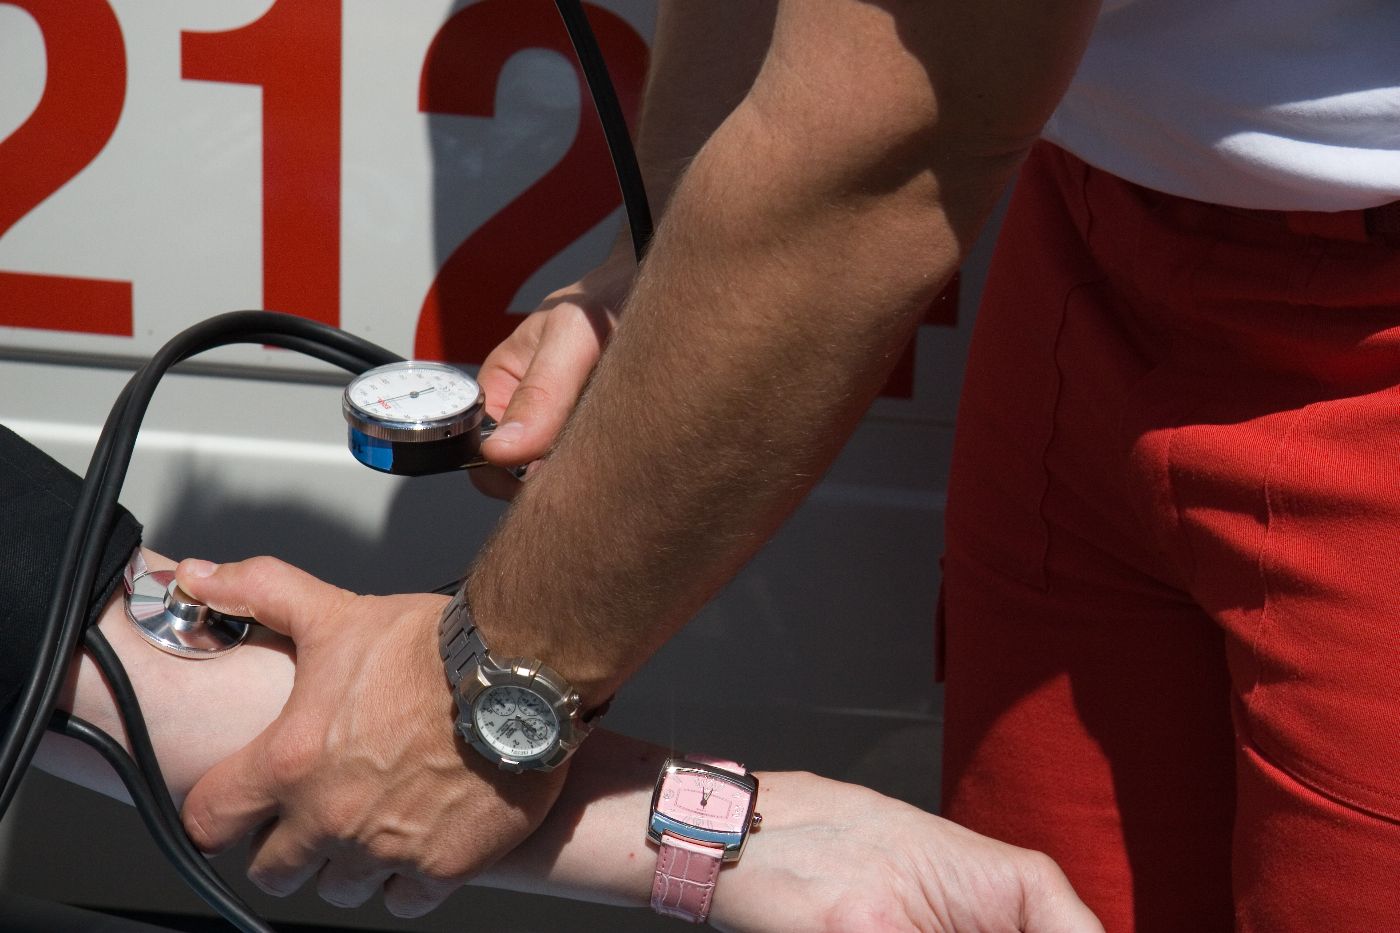 Ein Sanitäter führ eine Blutdruckmessung durch